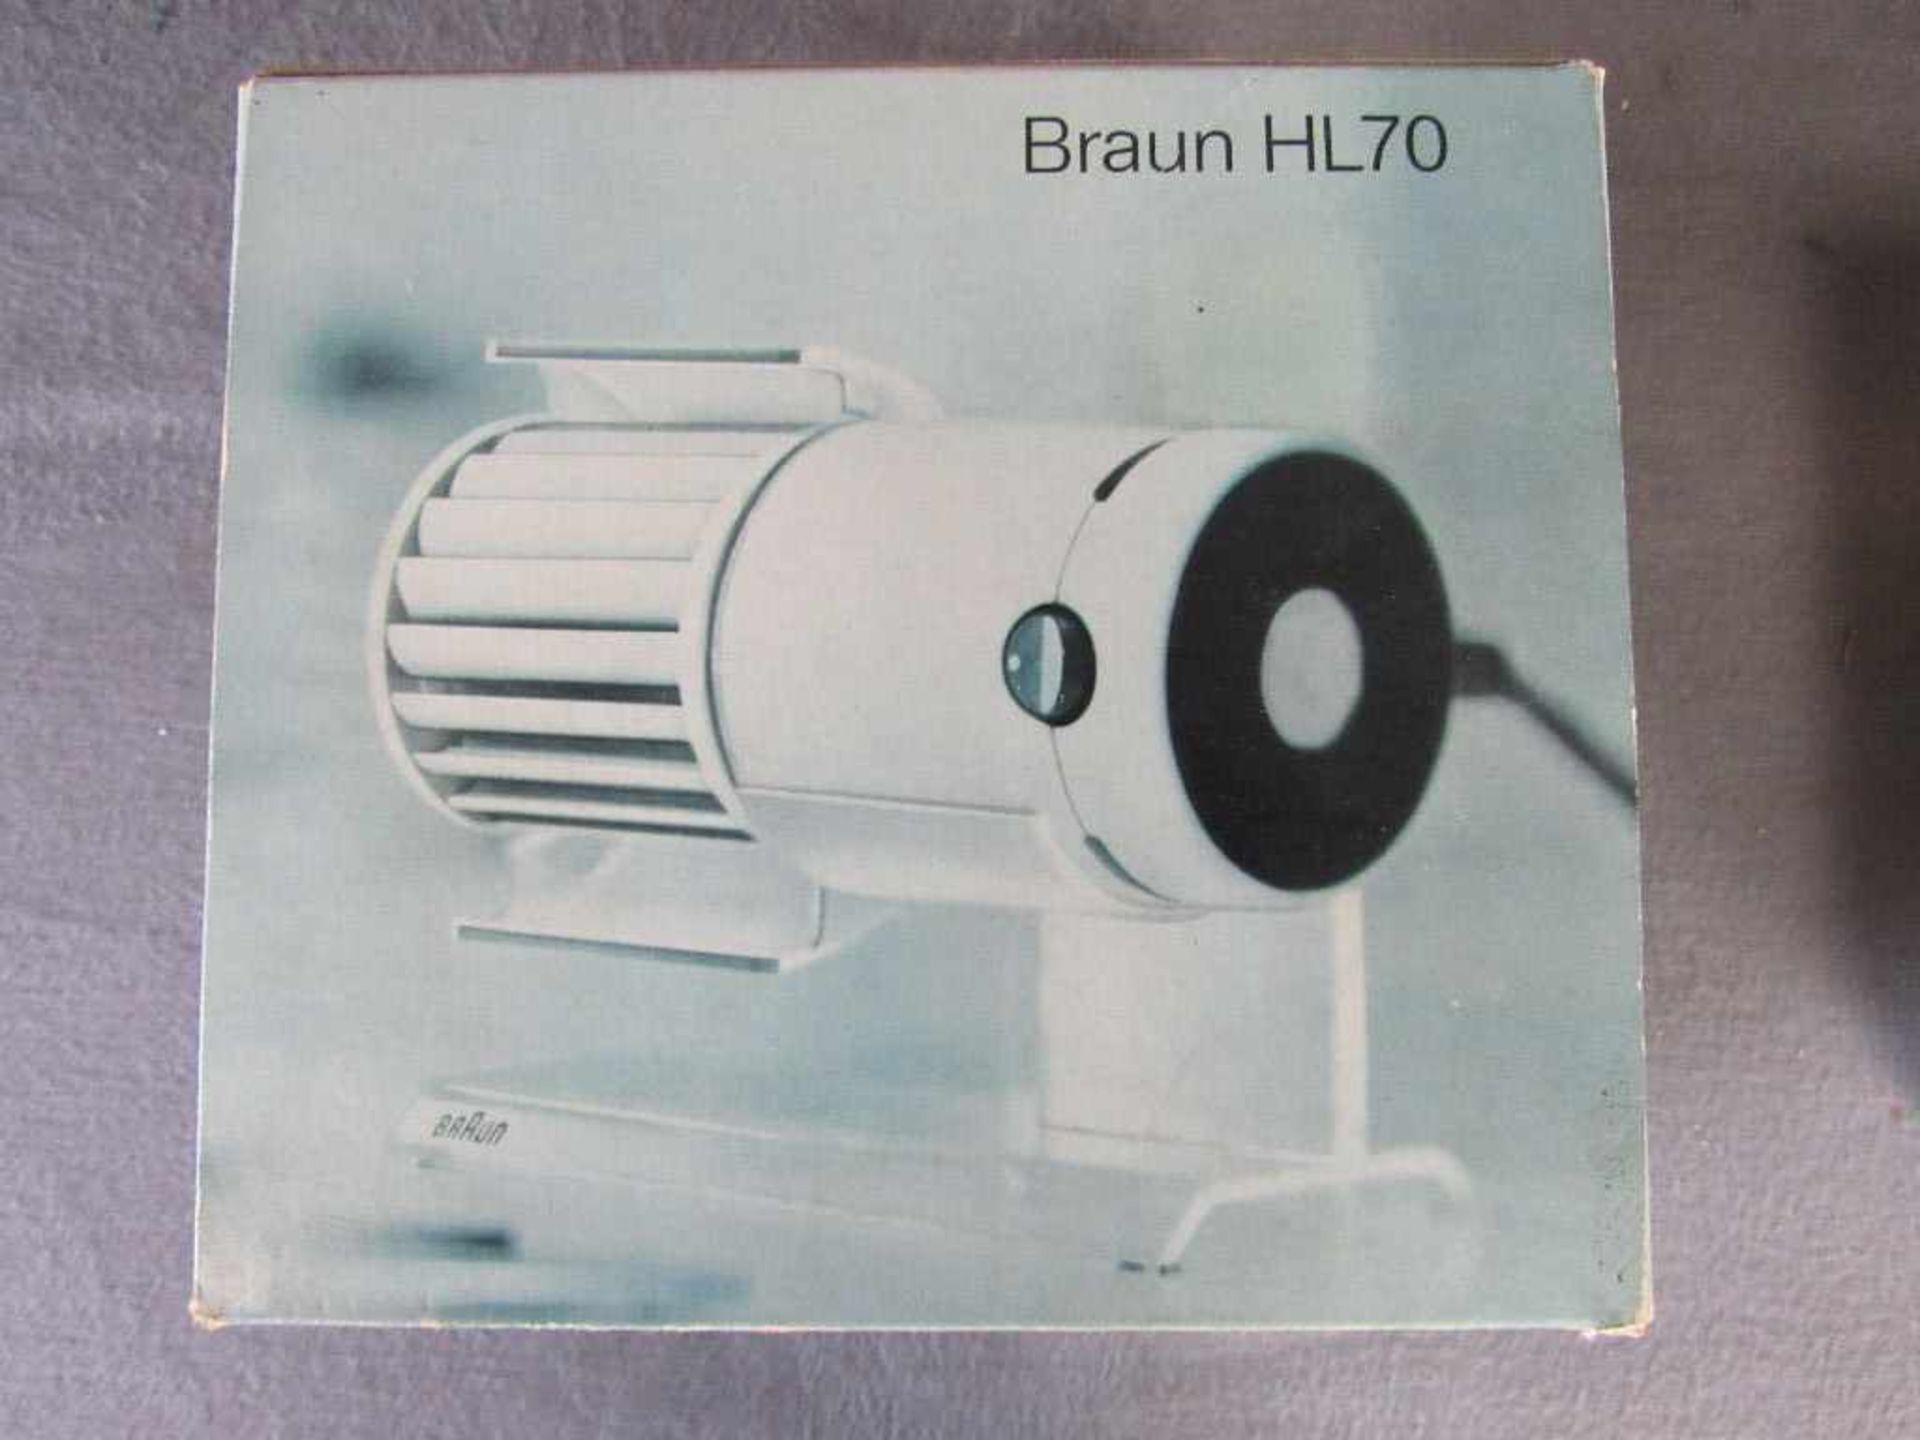 Space Age Tischventilator 70er Jahre Braun HL70 in OK- - -20.00 % buyer's premium on the hammer